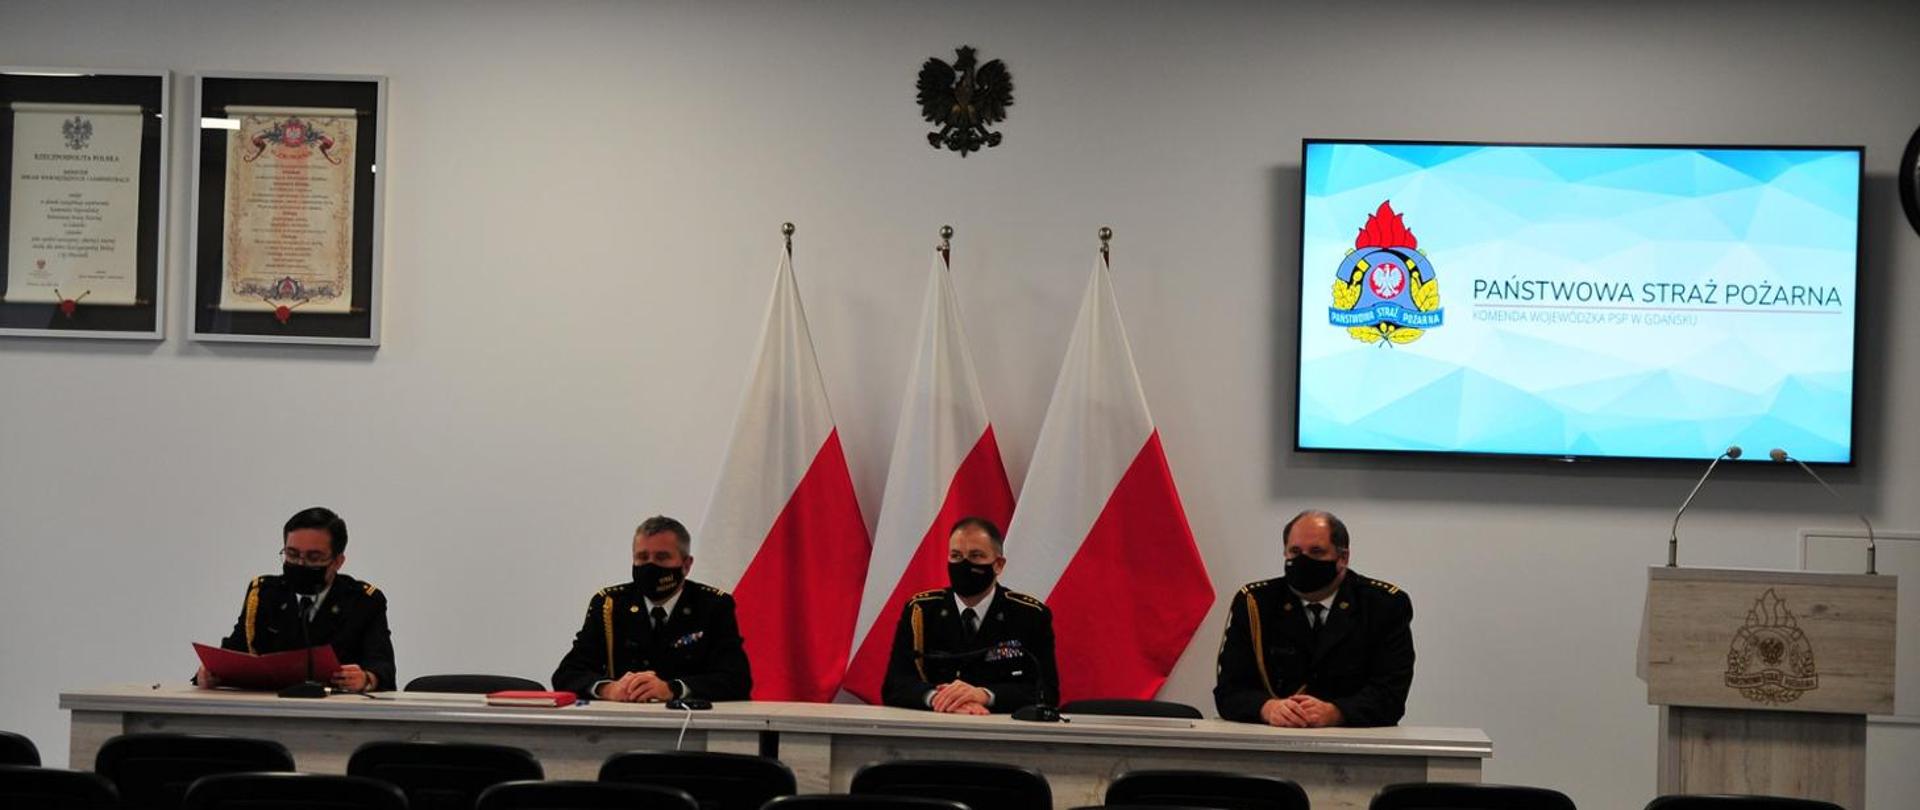 Zdjęcie przedstawia kierownictwo KW PSP w Gdańsku podczas wideokonferencji.